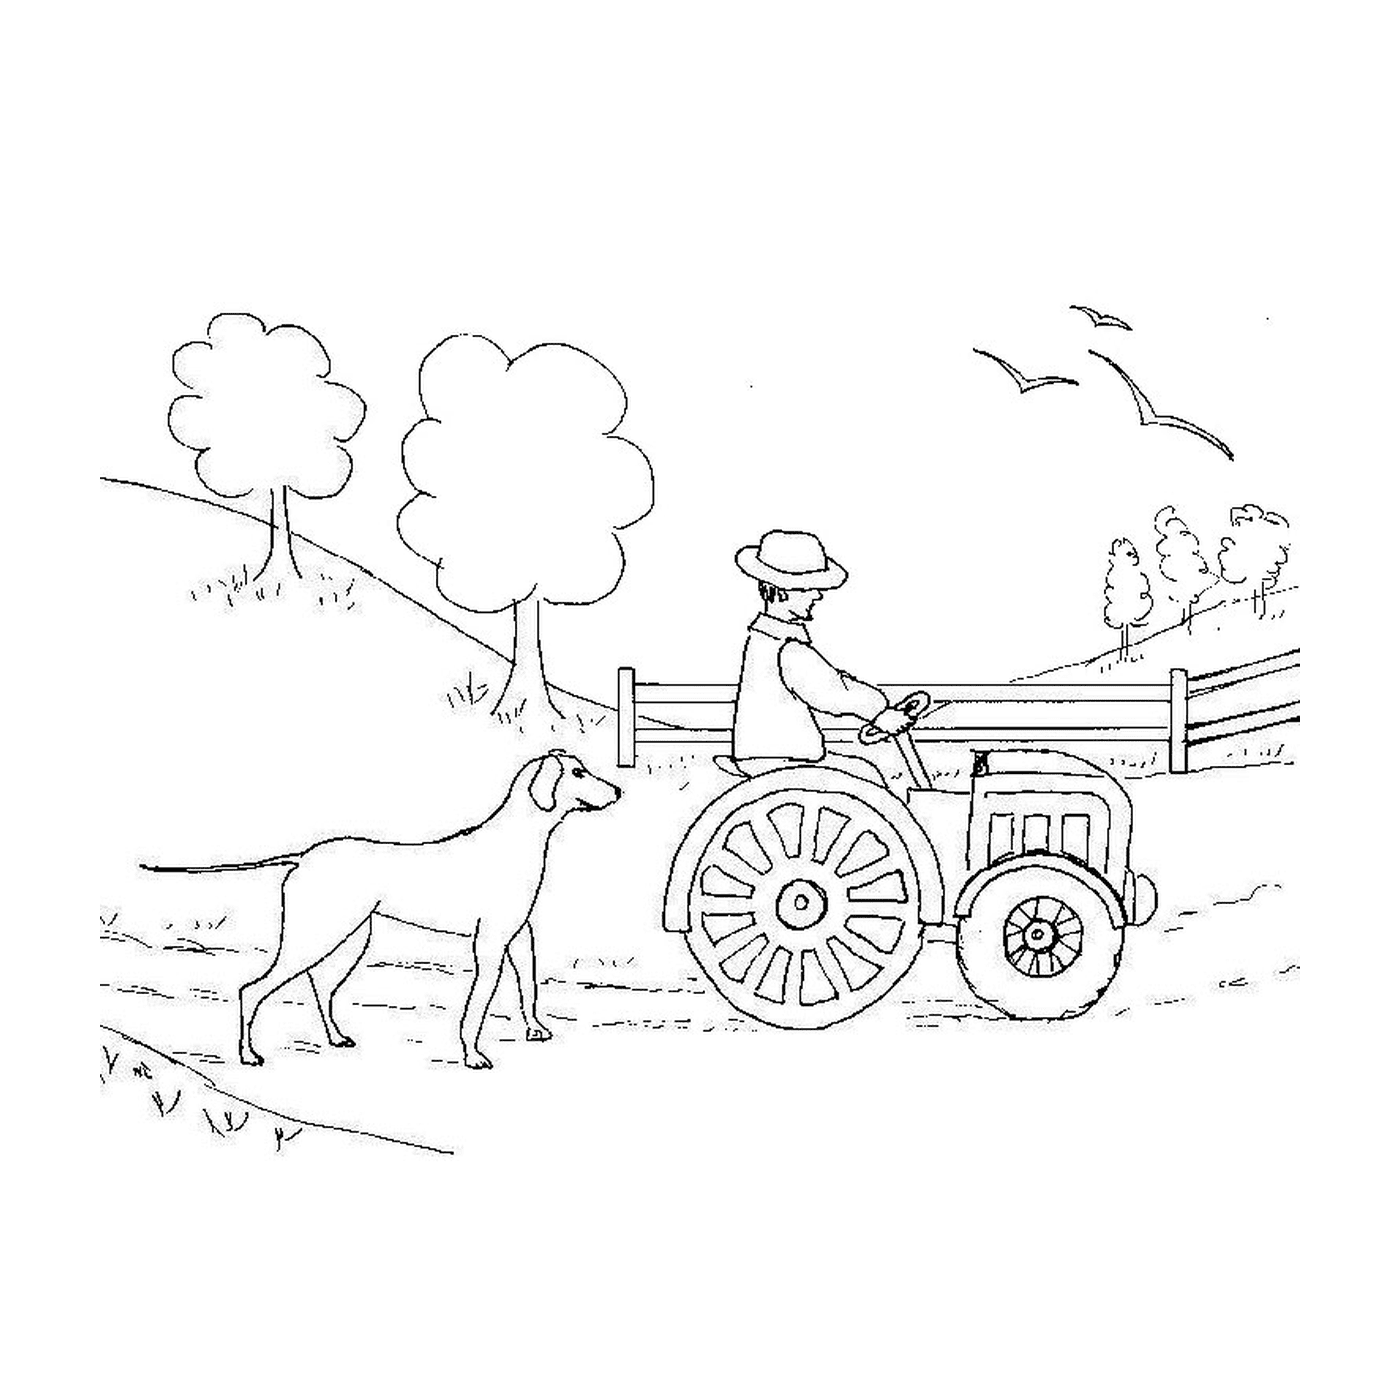   Homme conduit tracteur ferme 